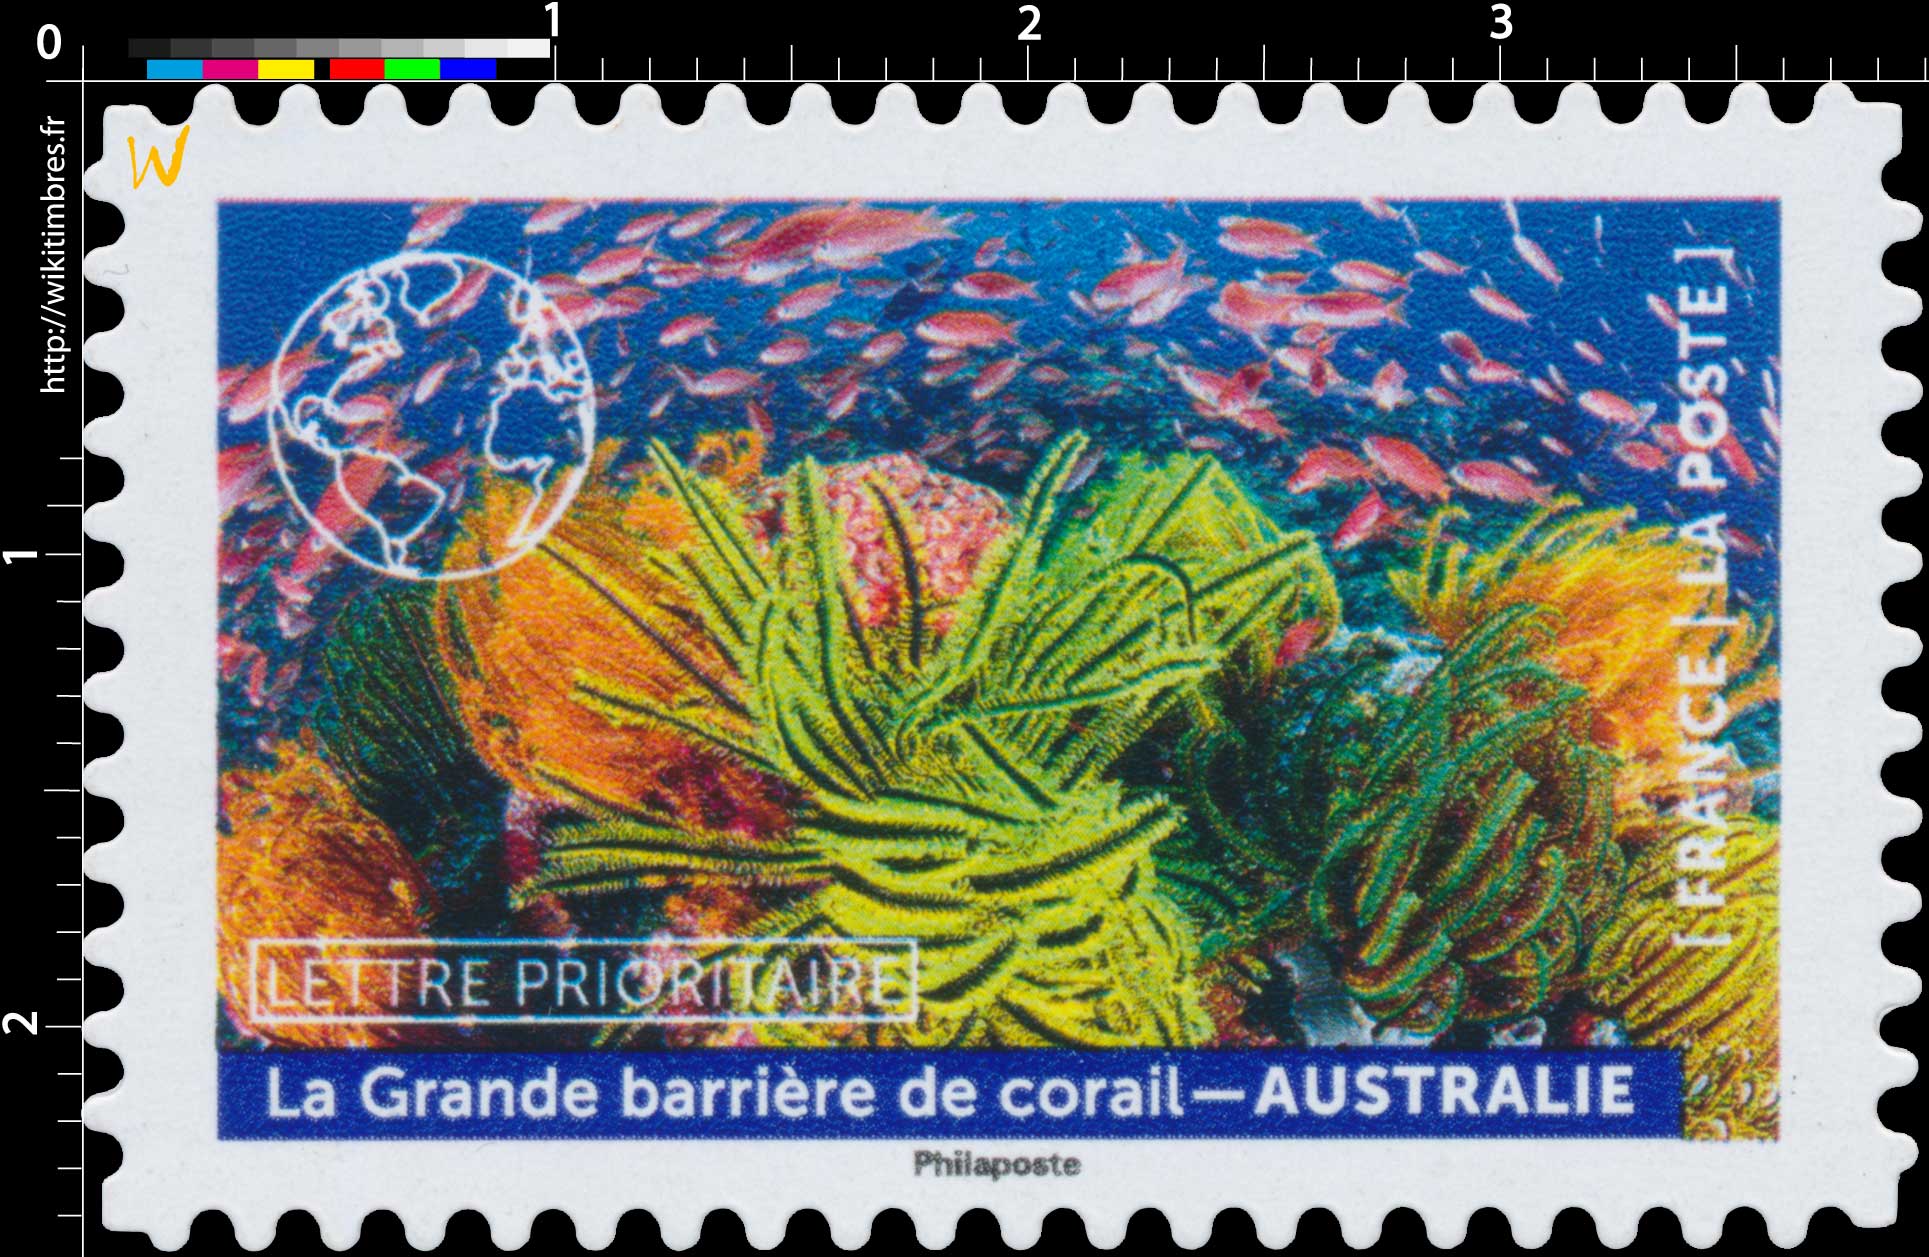 2022 La Grande barrière de corail – Australie